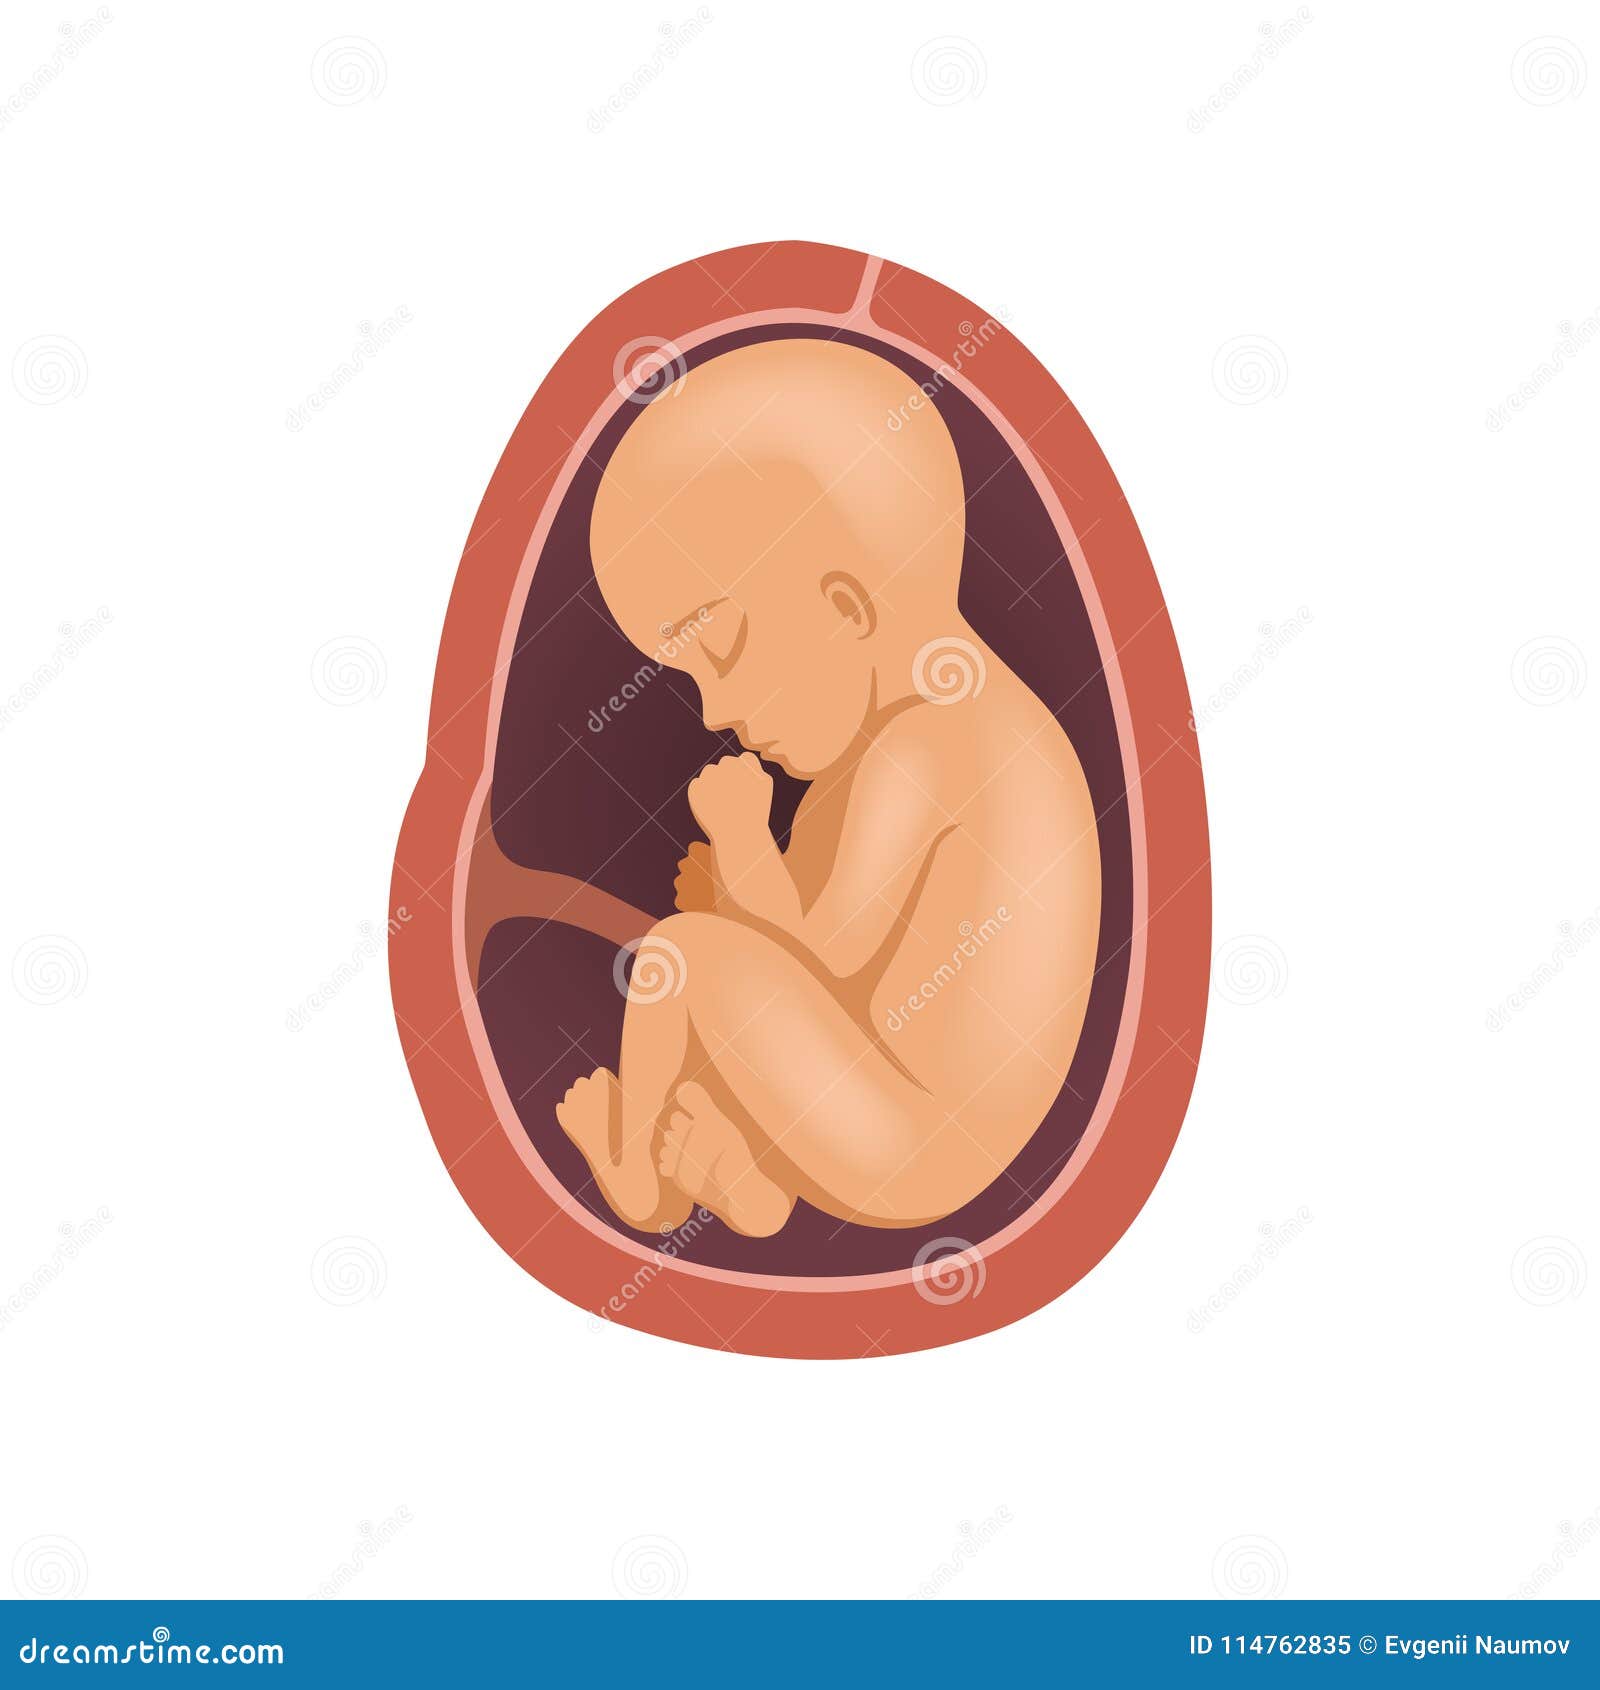 9 Meses en la matriz: Una mirada más notable al desarrollo del feto 